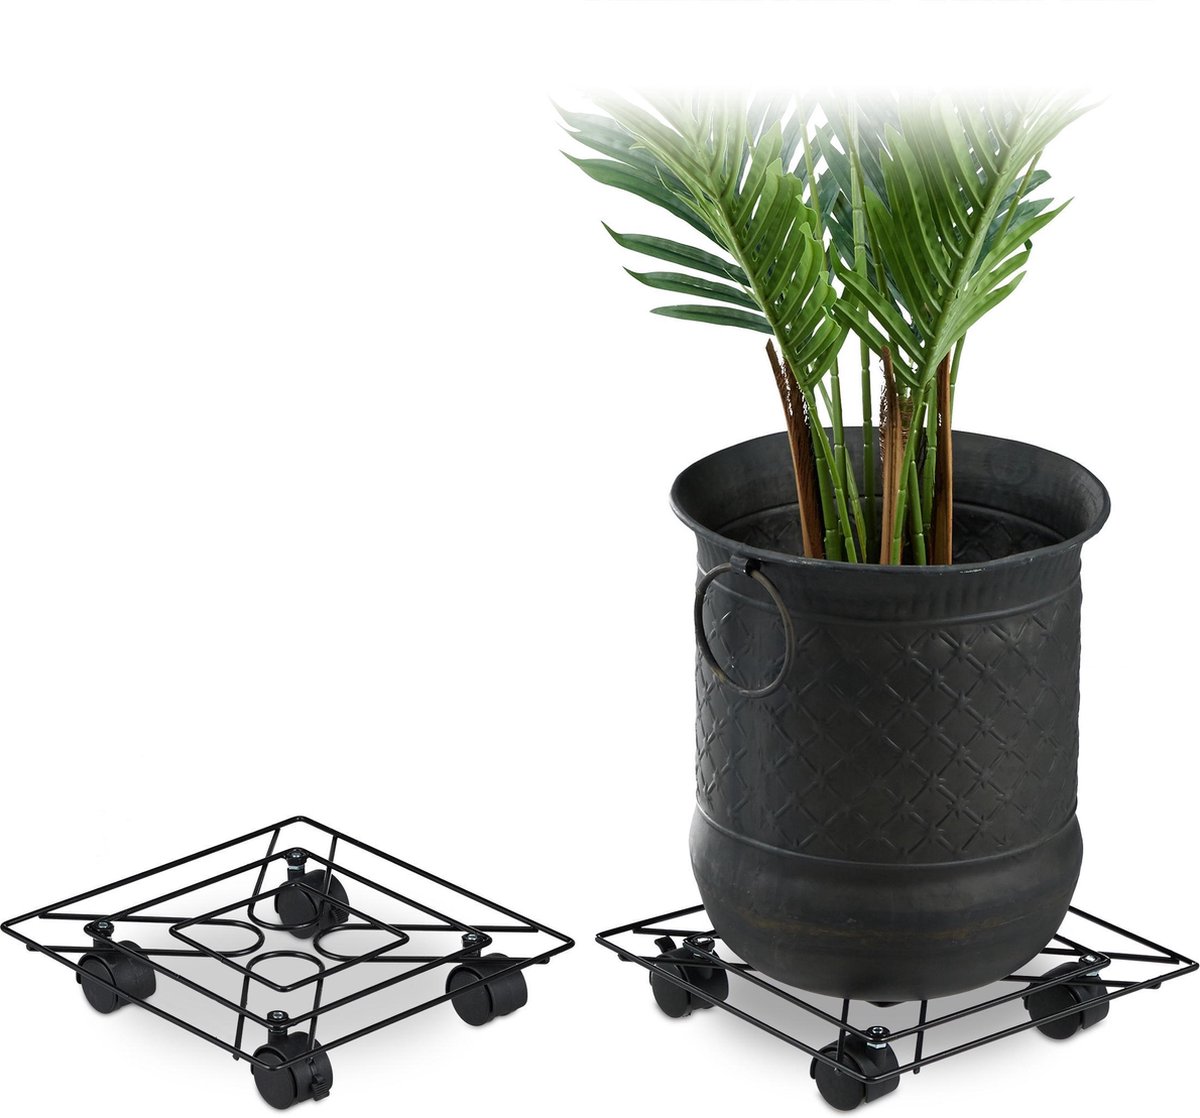 Relaxdays plantentrolley metaal set van 2 plantenroller plantenonderzetter zwart